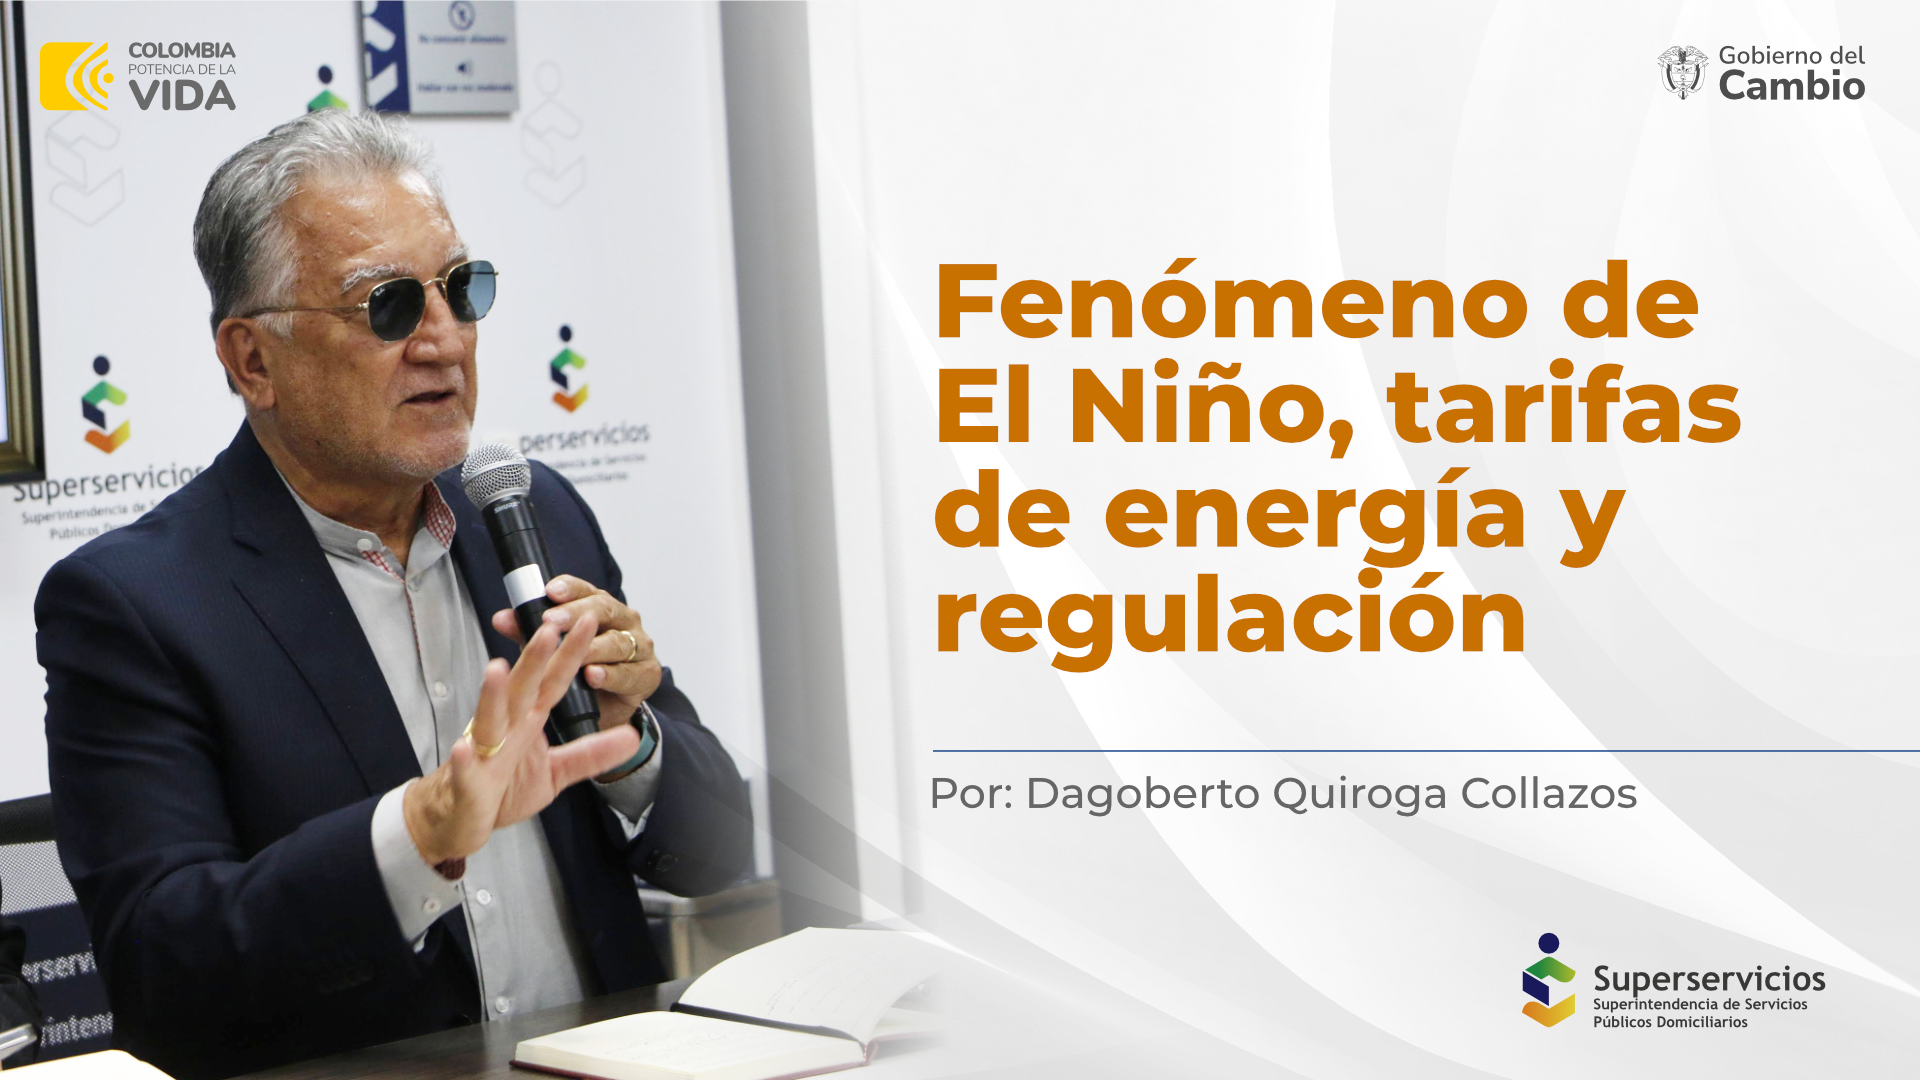 Fenómeno de El Niño, tarifas de energía y regulación